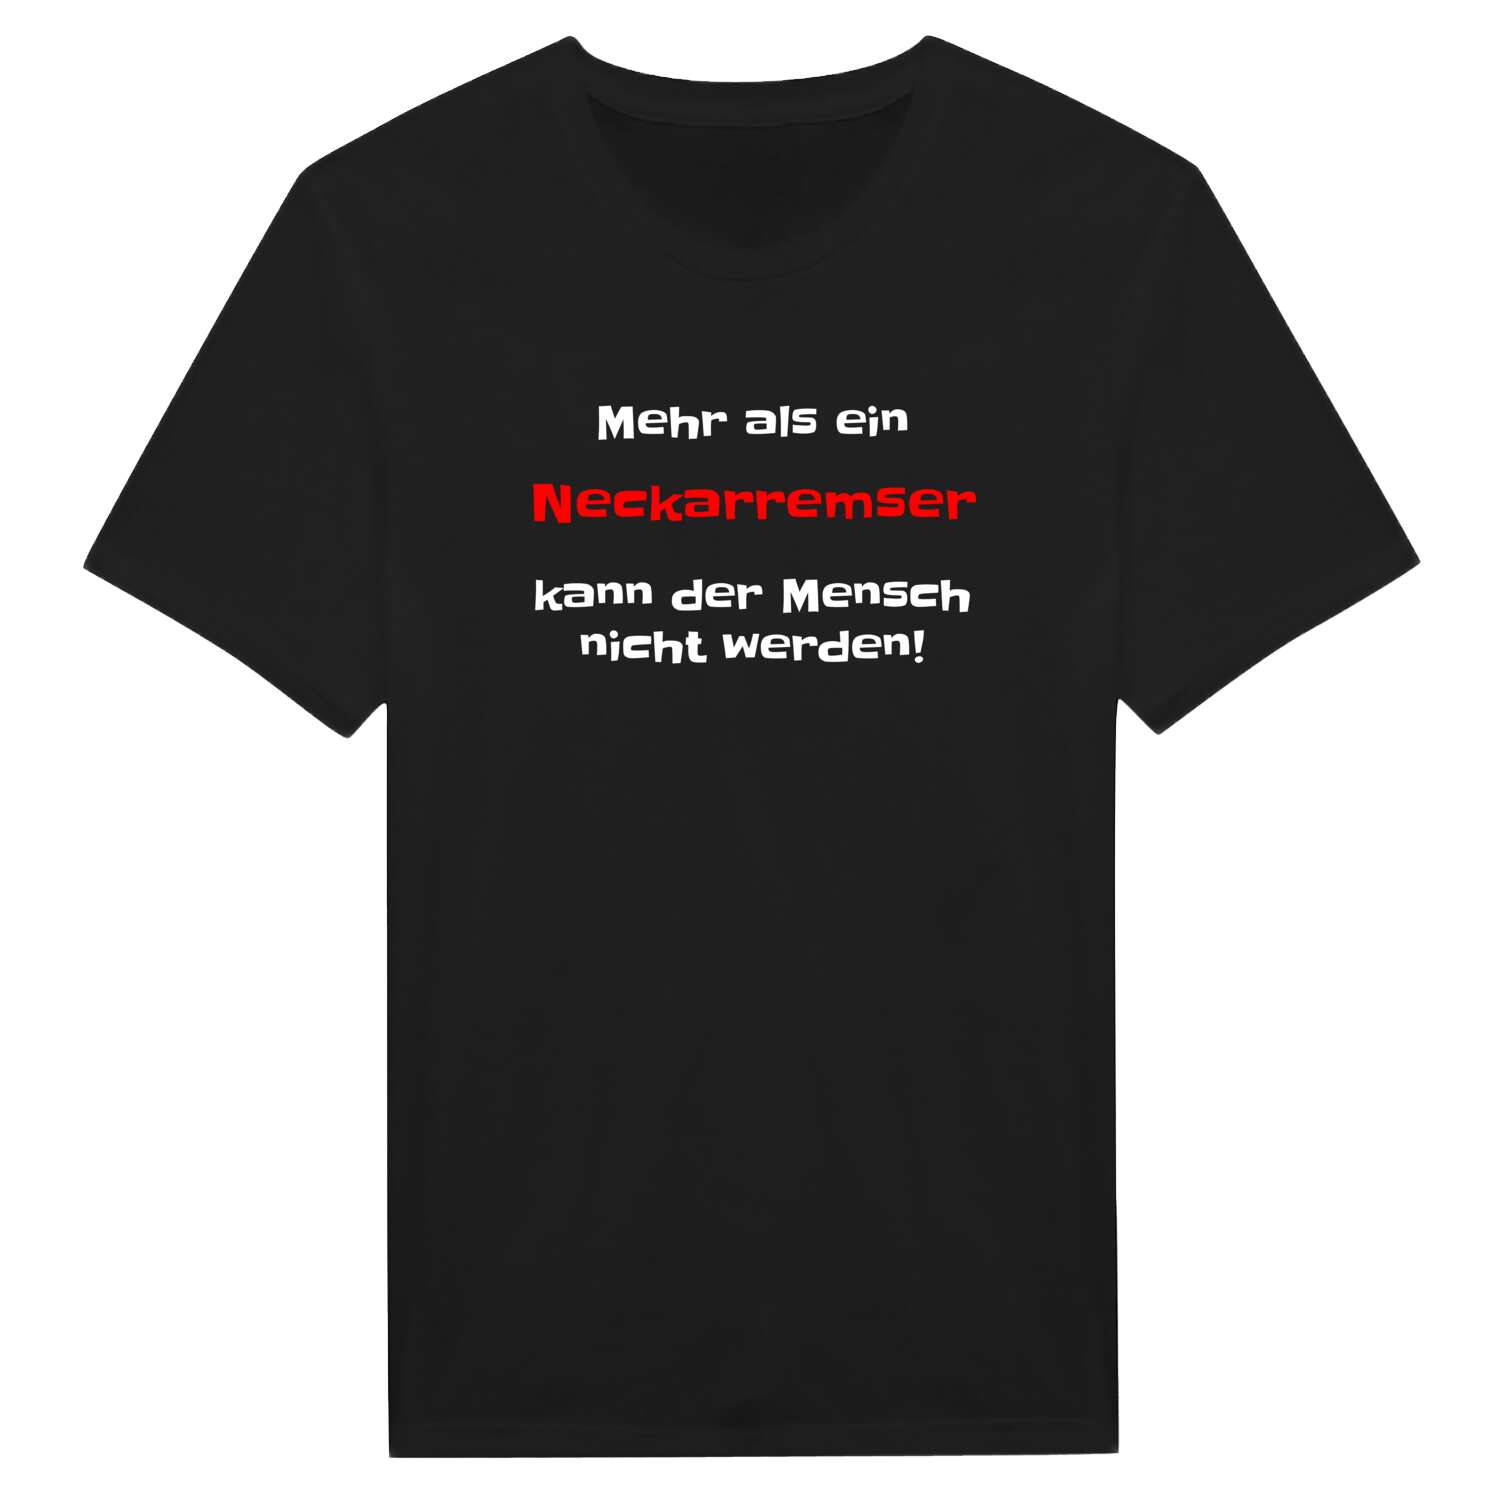 Neckarrems T-Shirt »Mehr als ein«